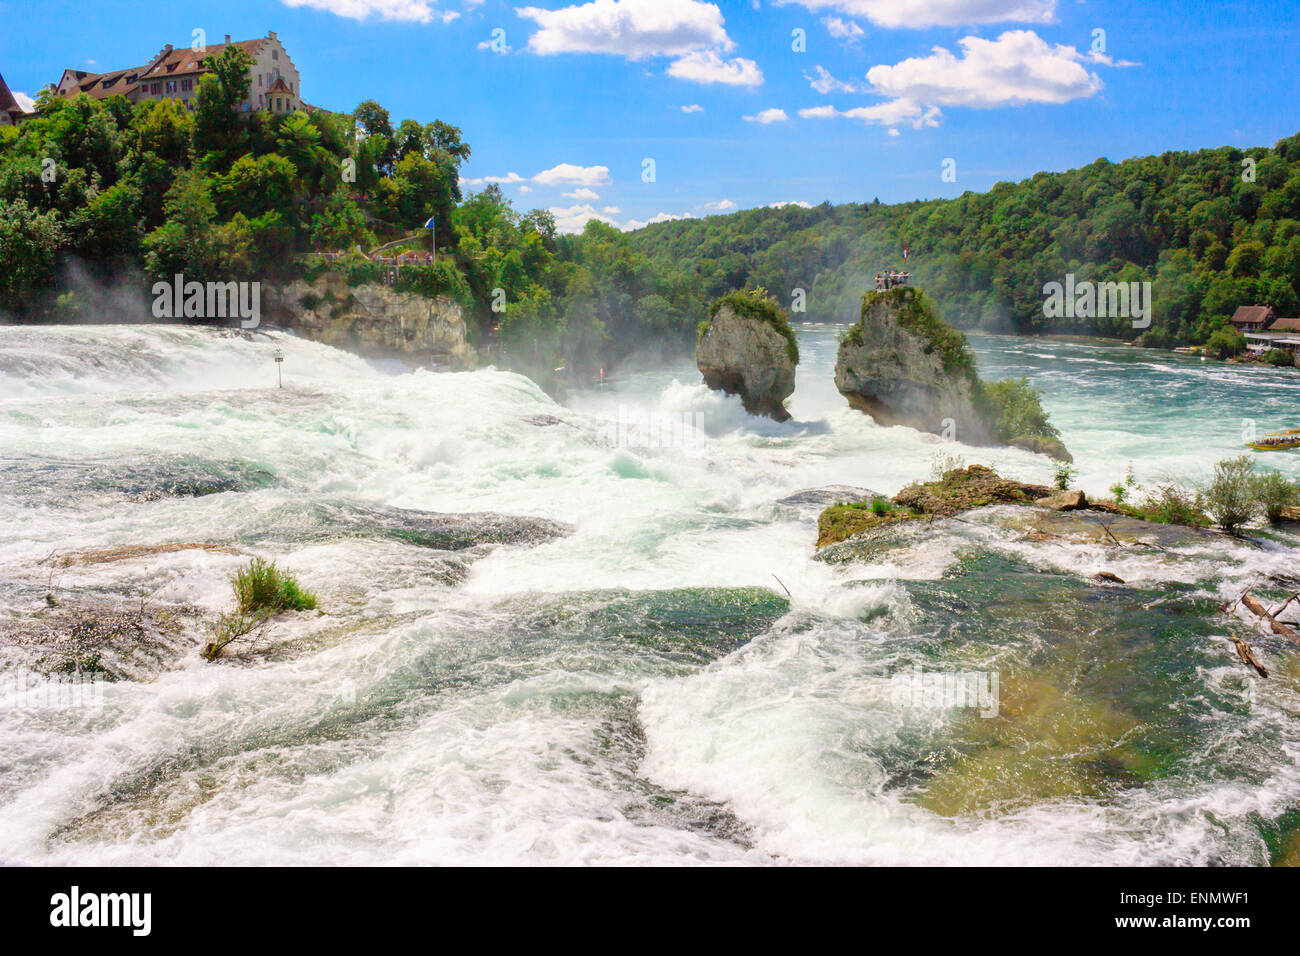 Rheinfall - der grösste Wasserfall Europas, befindet sich in Schaffhausen, Schweiz. Zwei massive Felsen in der Mitte der Fluss-Angebot Stockfoto